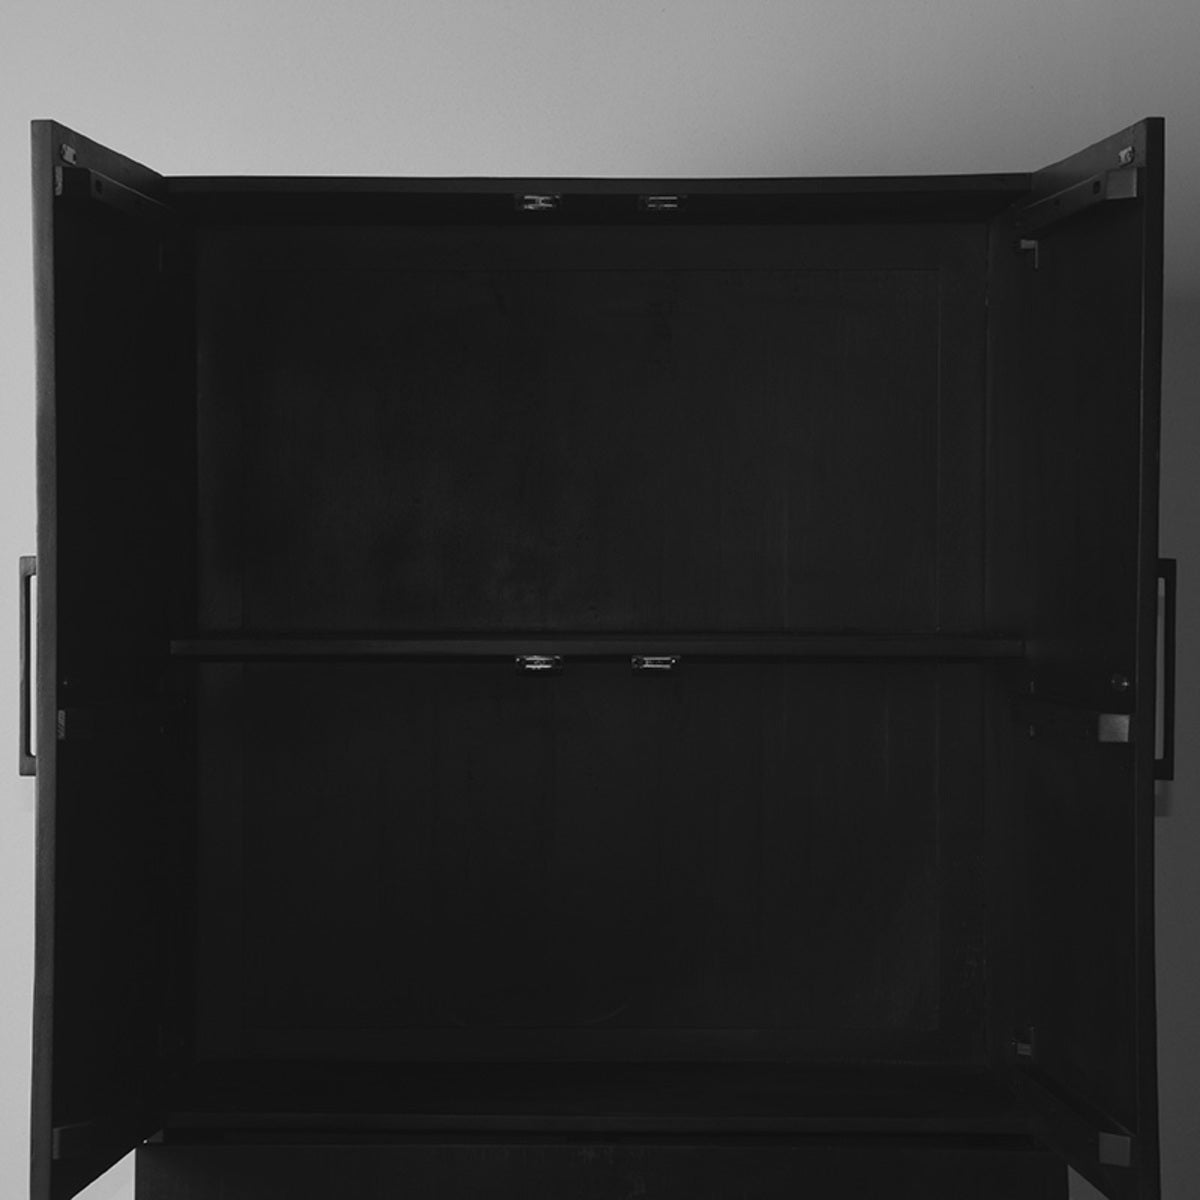 LABEL51 Storage cupboard - Black - Mango wood - 2-Door